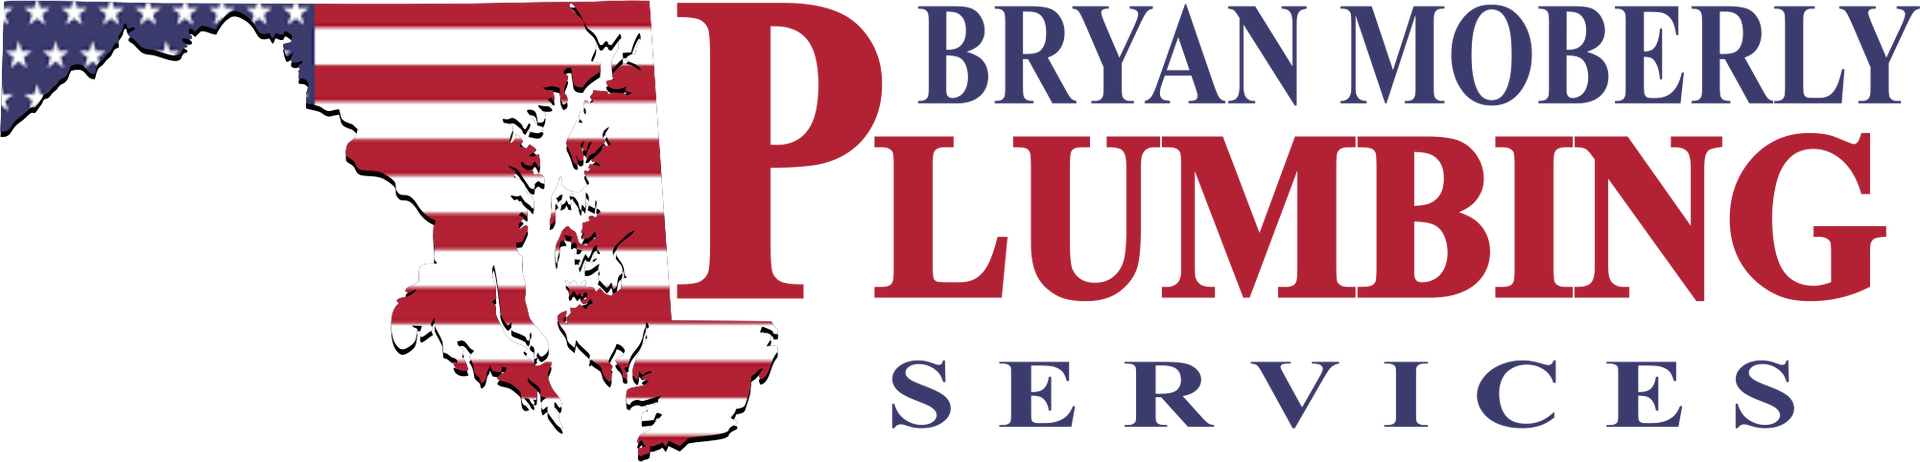 Bryan Moberly Plumbing Logo